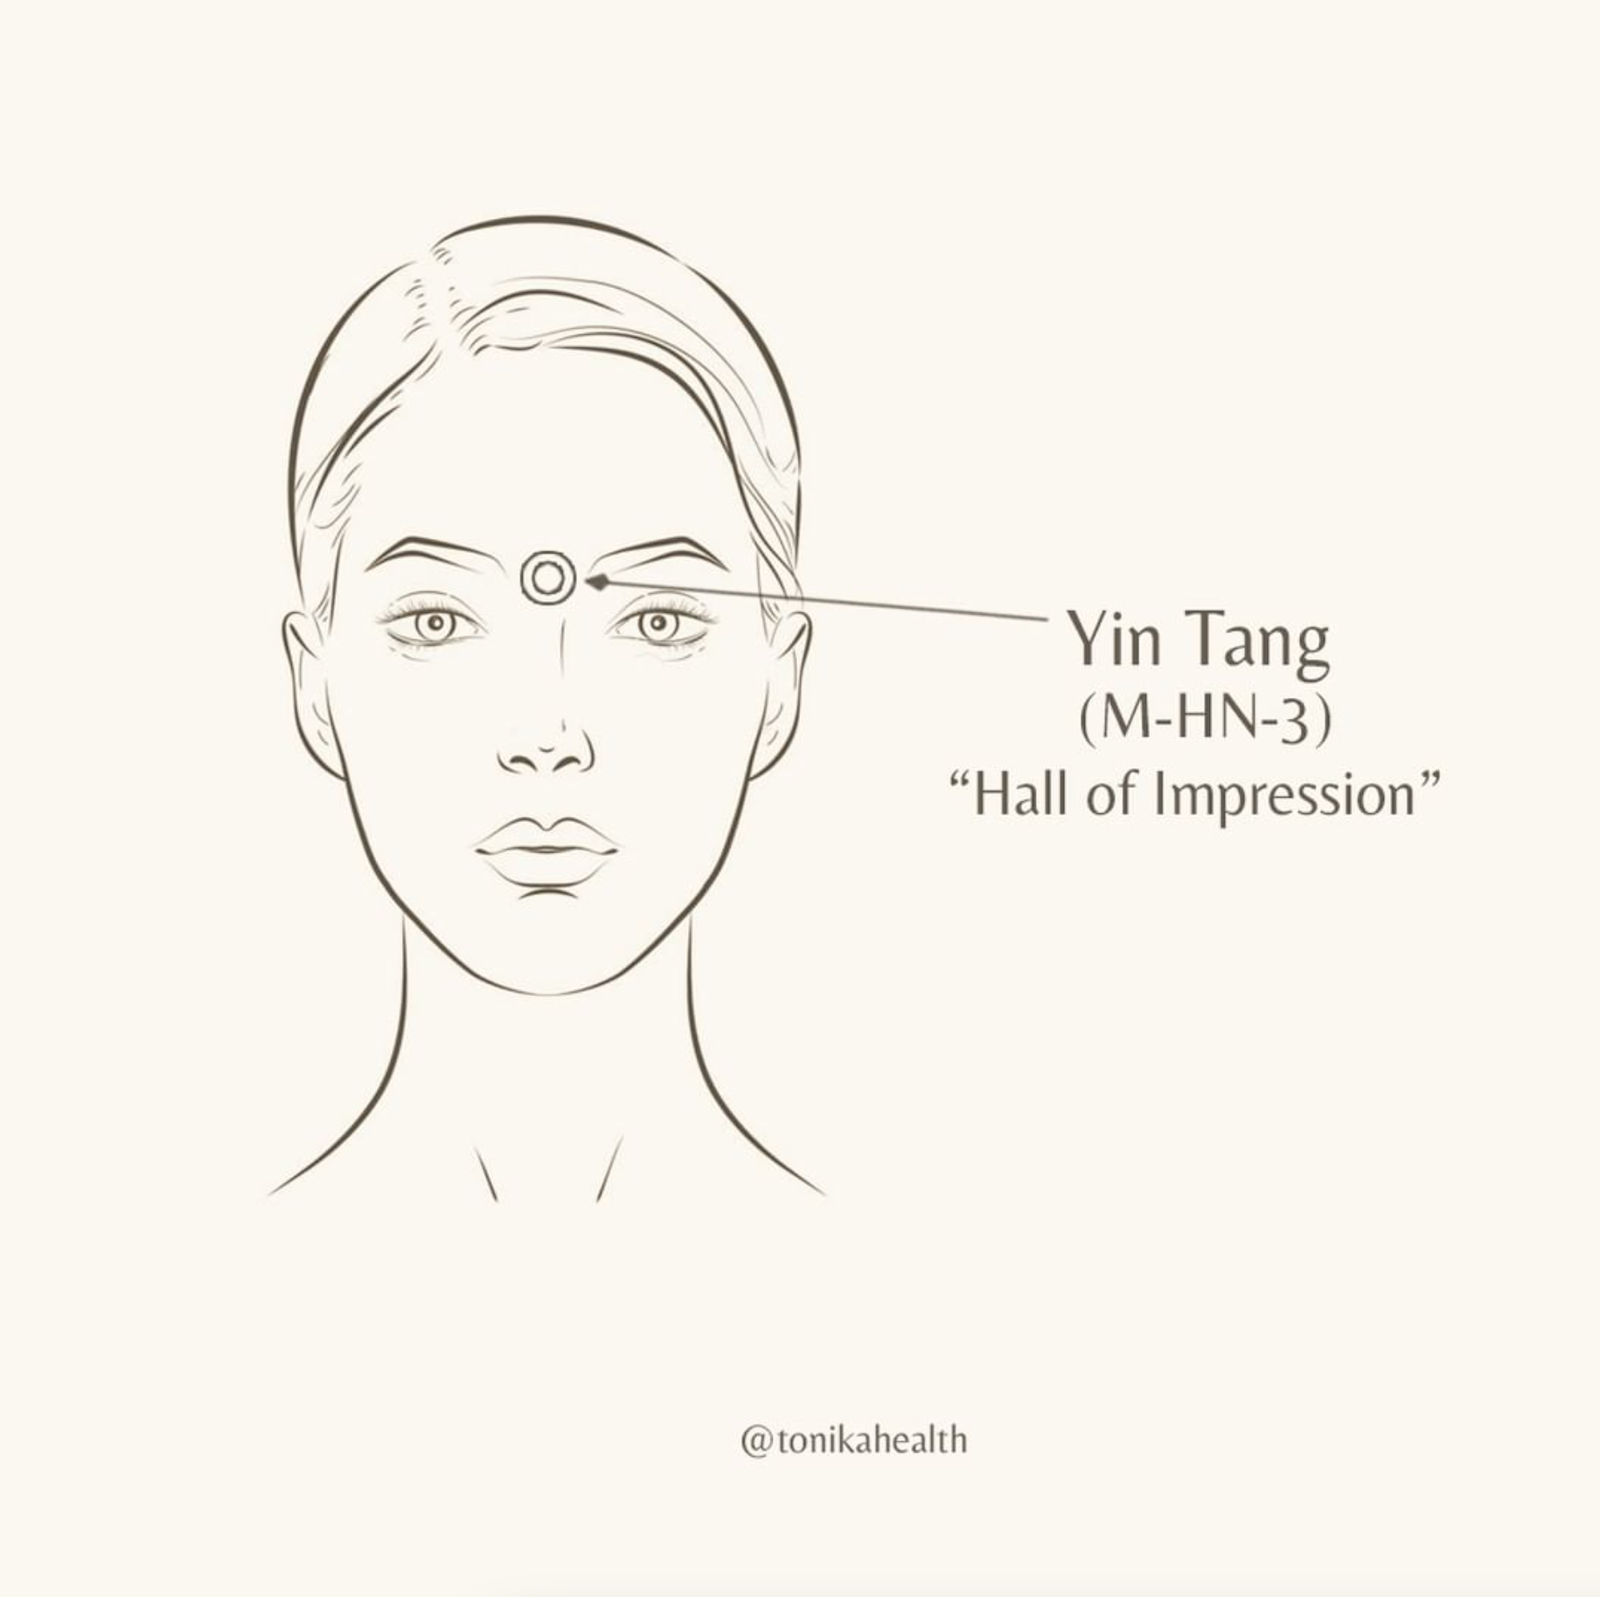 Yin Tang